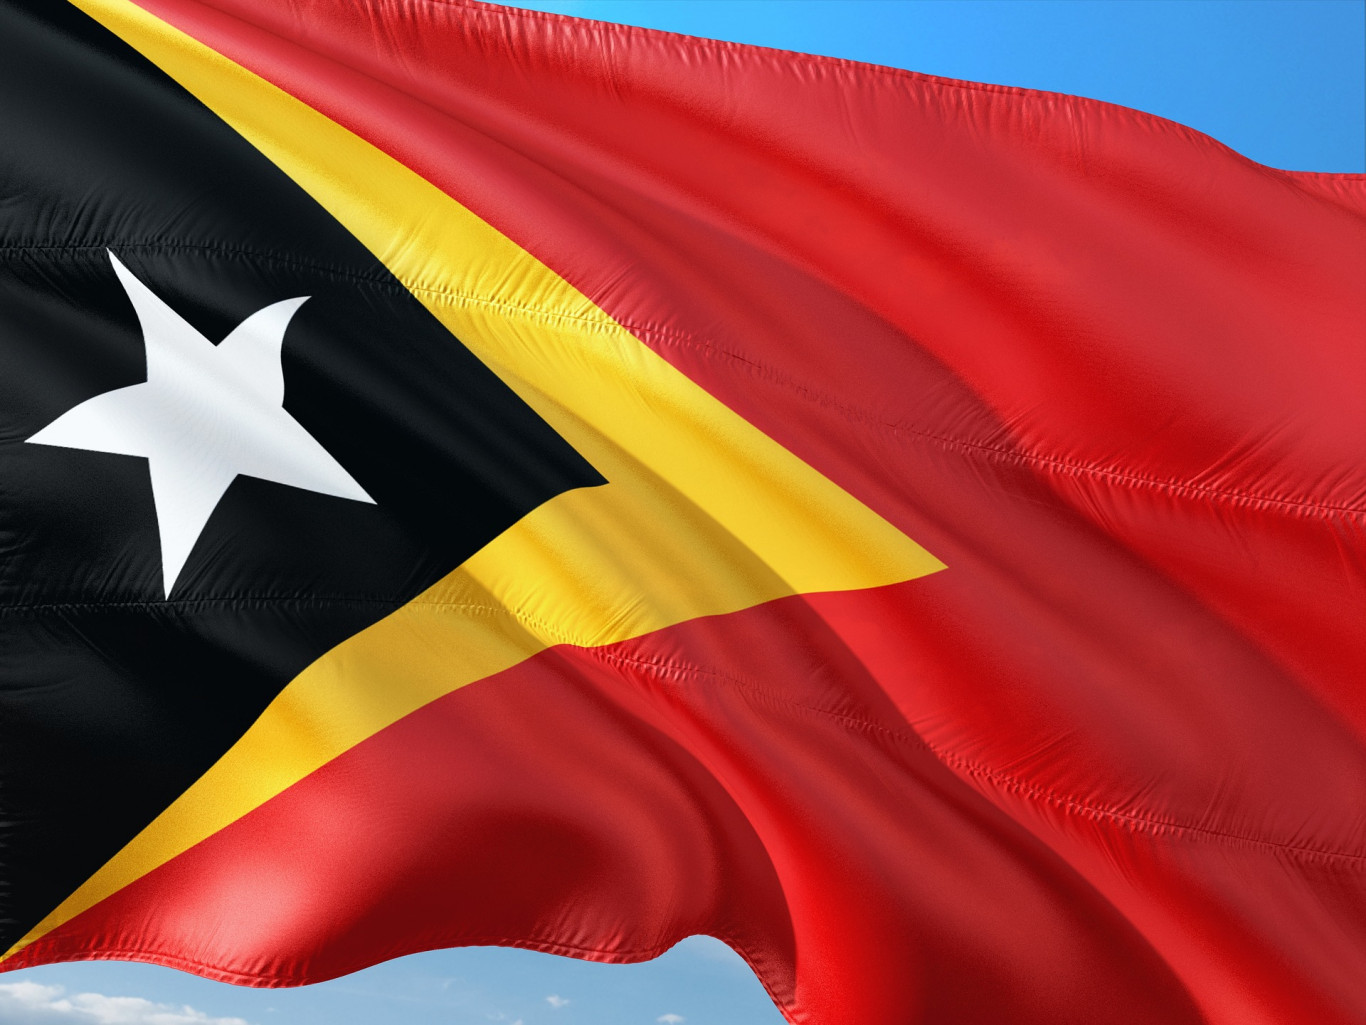 Định nghĩa về nhãn hiệu tại Timor Leste, Định nghĩa về nhãn hiệu tại East Timor, nhãn hiệu tại Timor Leste, thế nào là nhãn hiệu tại Timor Leste, định nghĩa về nhãn hiệu tại Timor Leste